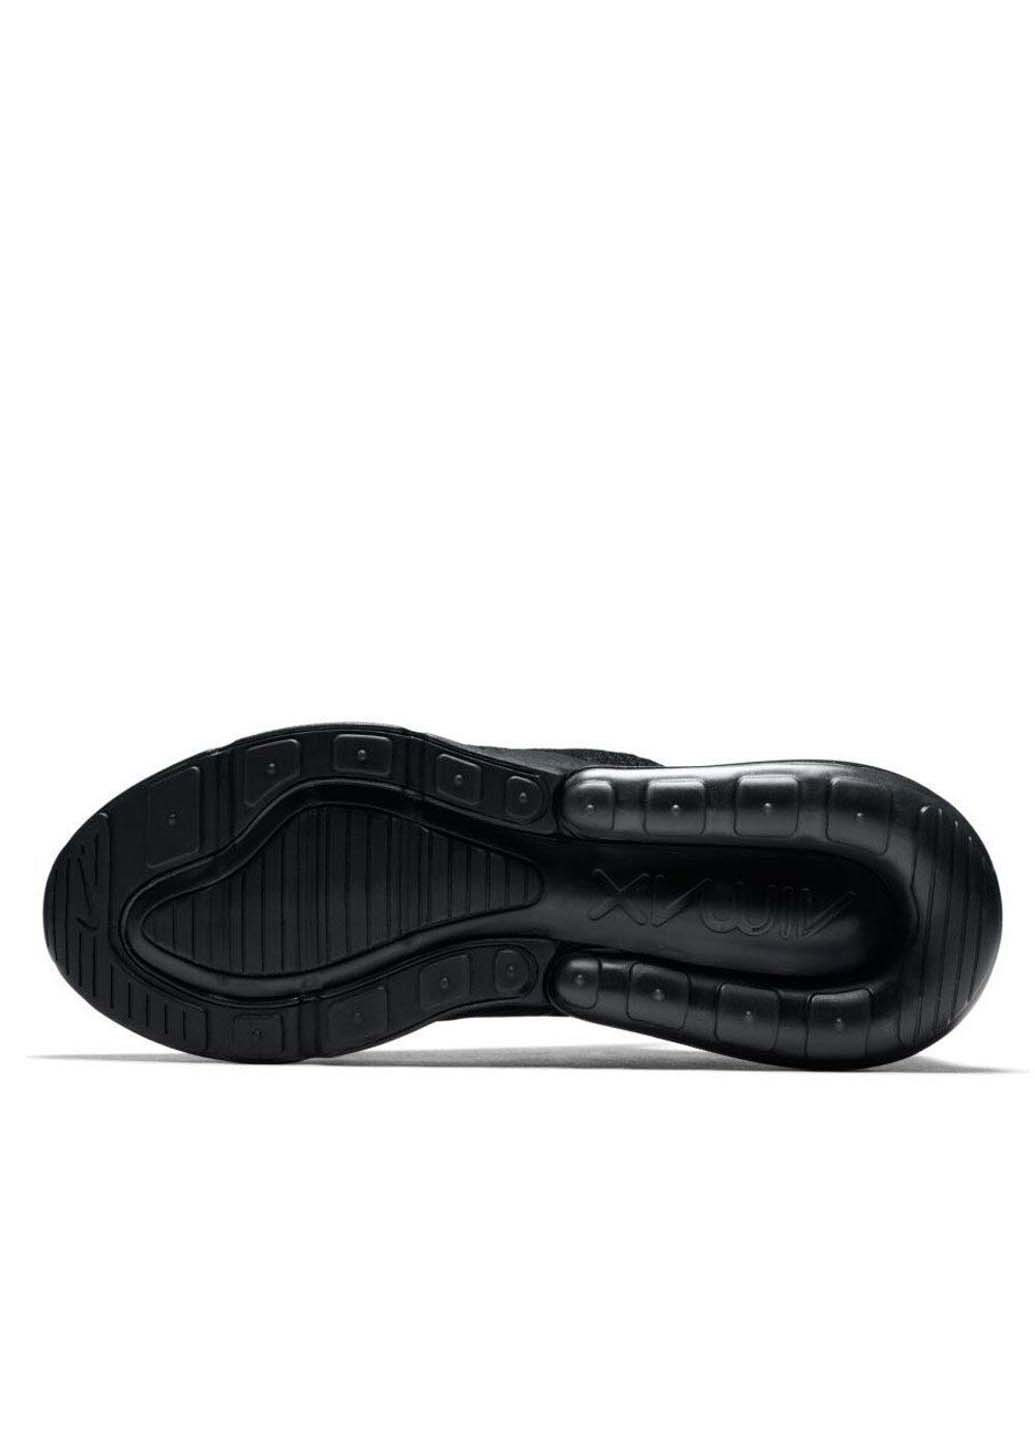 Черные кроссовки Nike Air Max 270